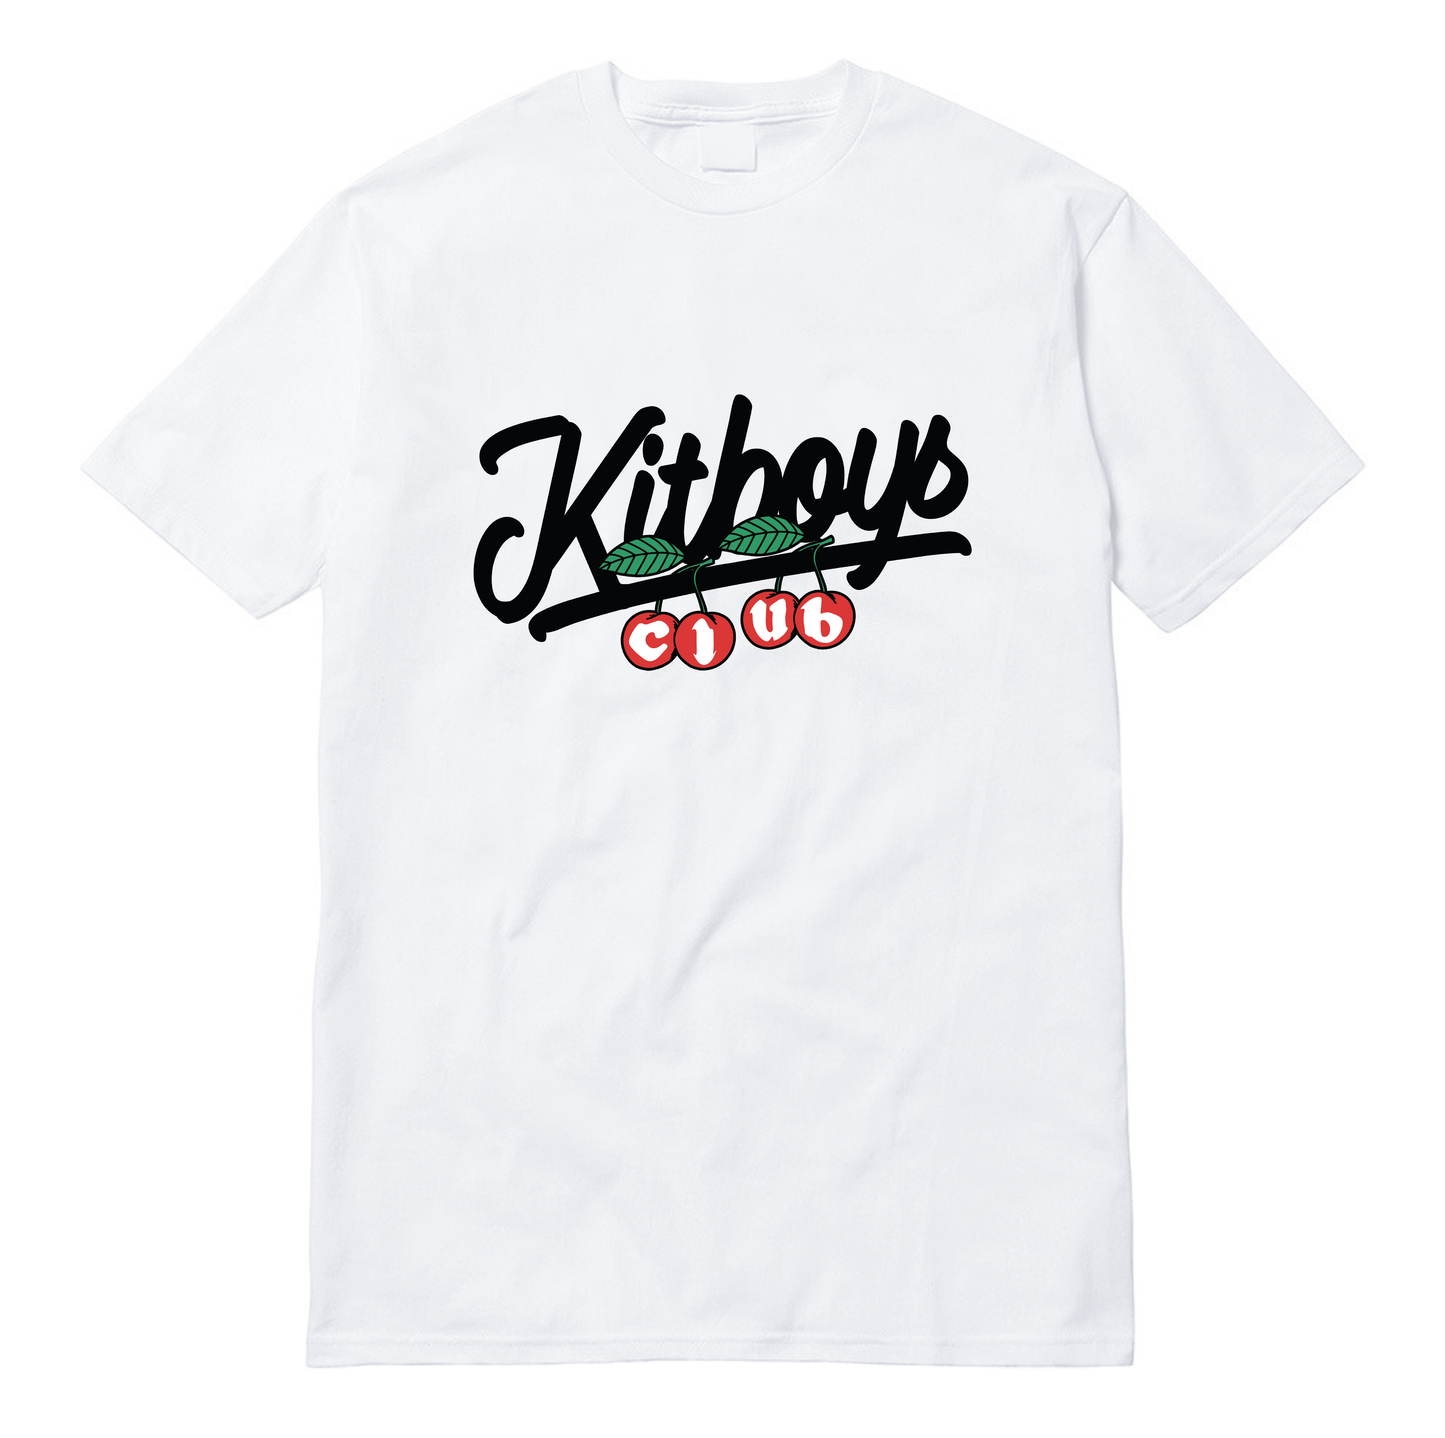 Kitboys Cherry Tee